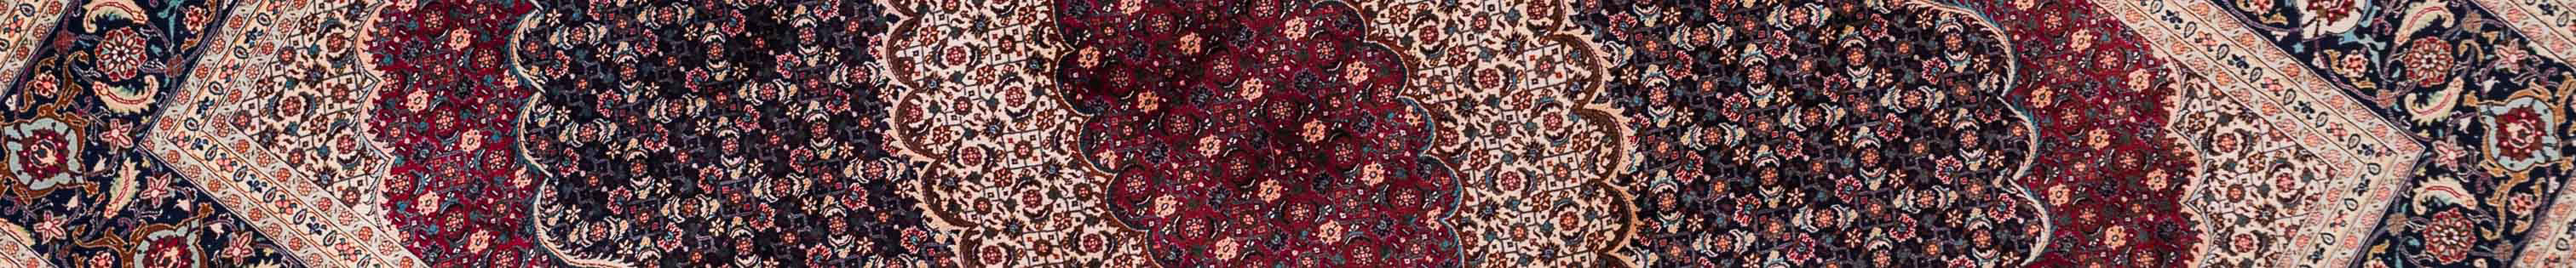 Tabriz Mahi Persian Carpet Rug N1Carpet Canada Montreal Tapis Persan 6300